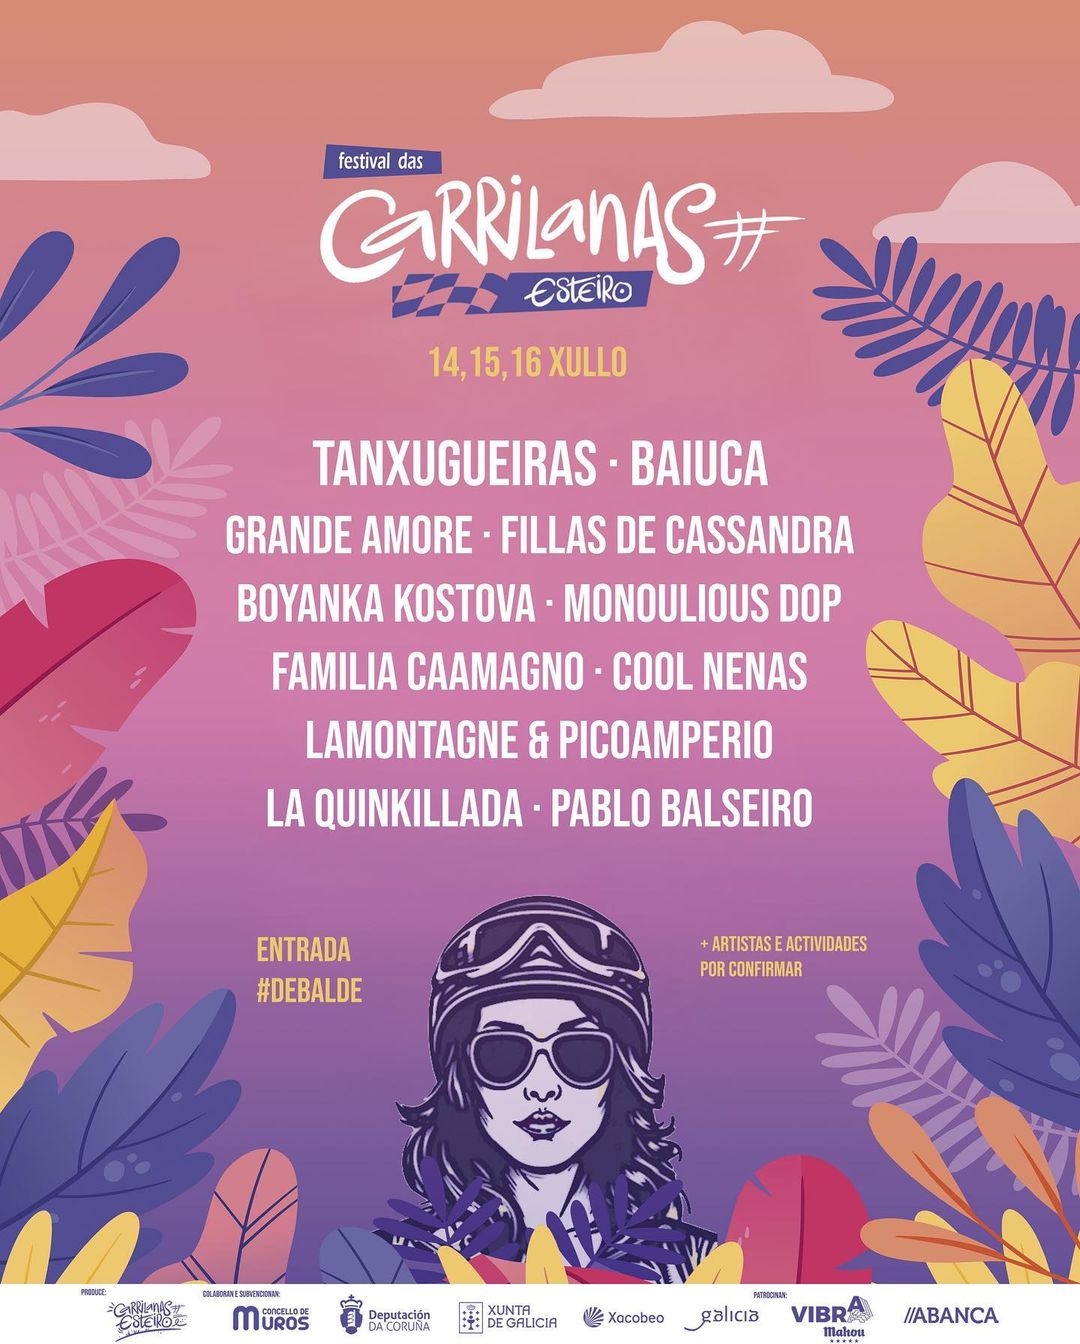 Cartel hasta el momento del Festival das Carrilanas Esteiro 2023